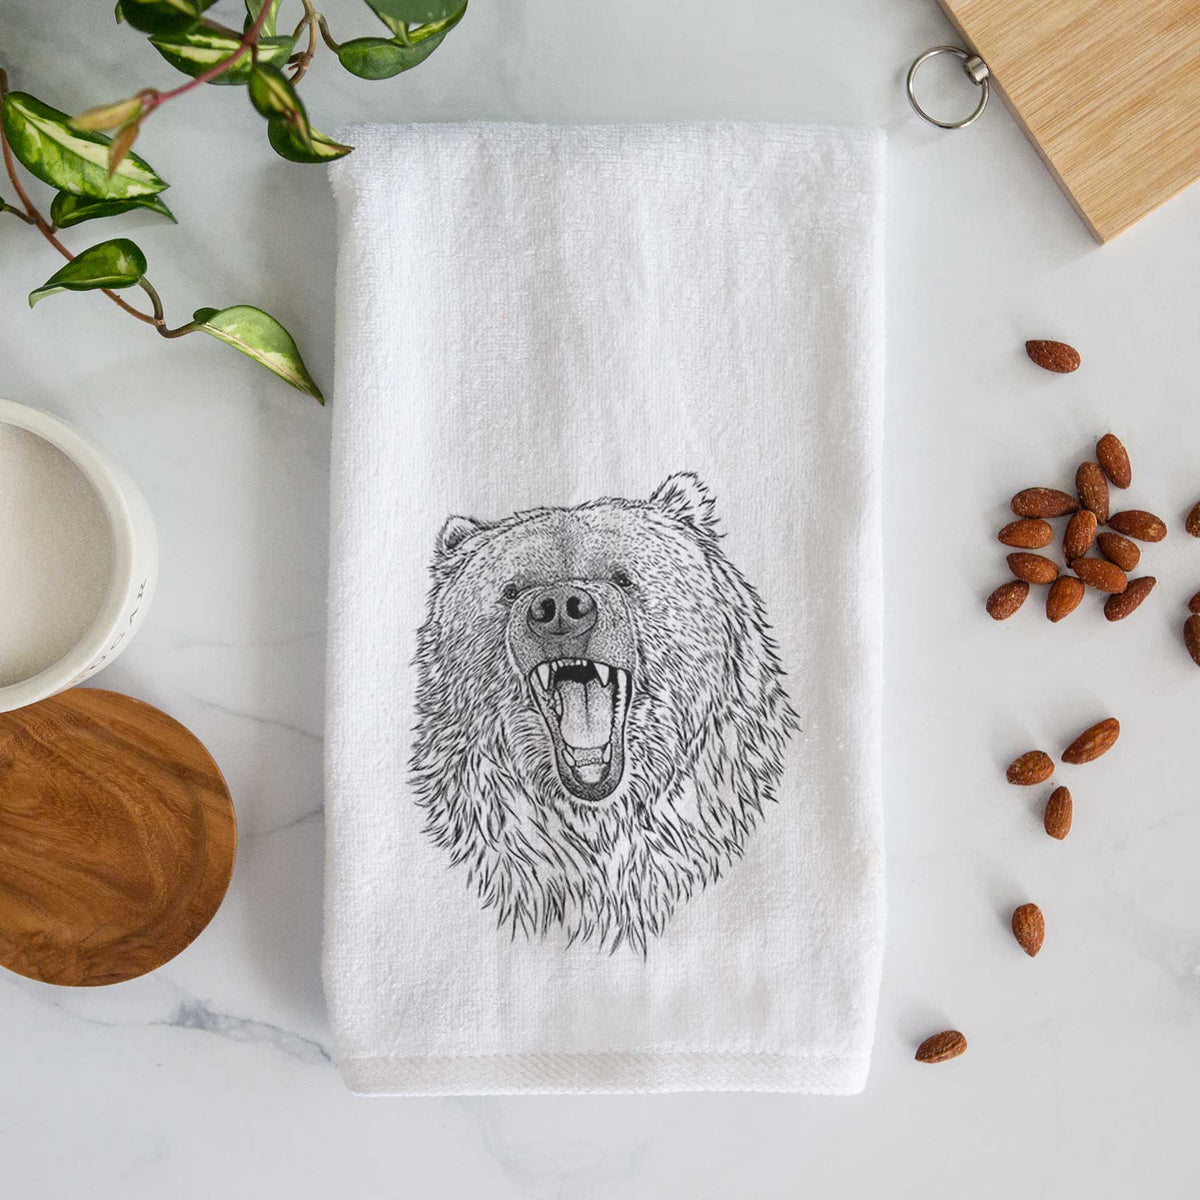 Ursus arctos - Kodiak Bear Hand Towel